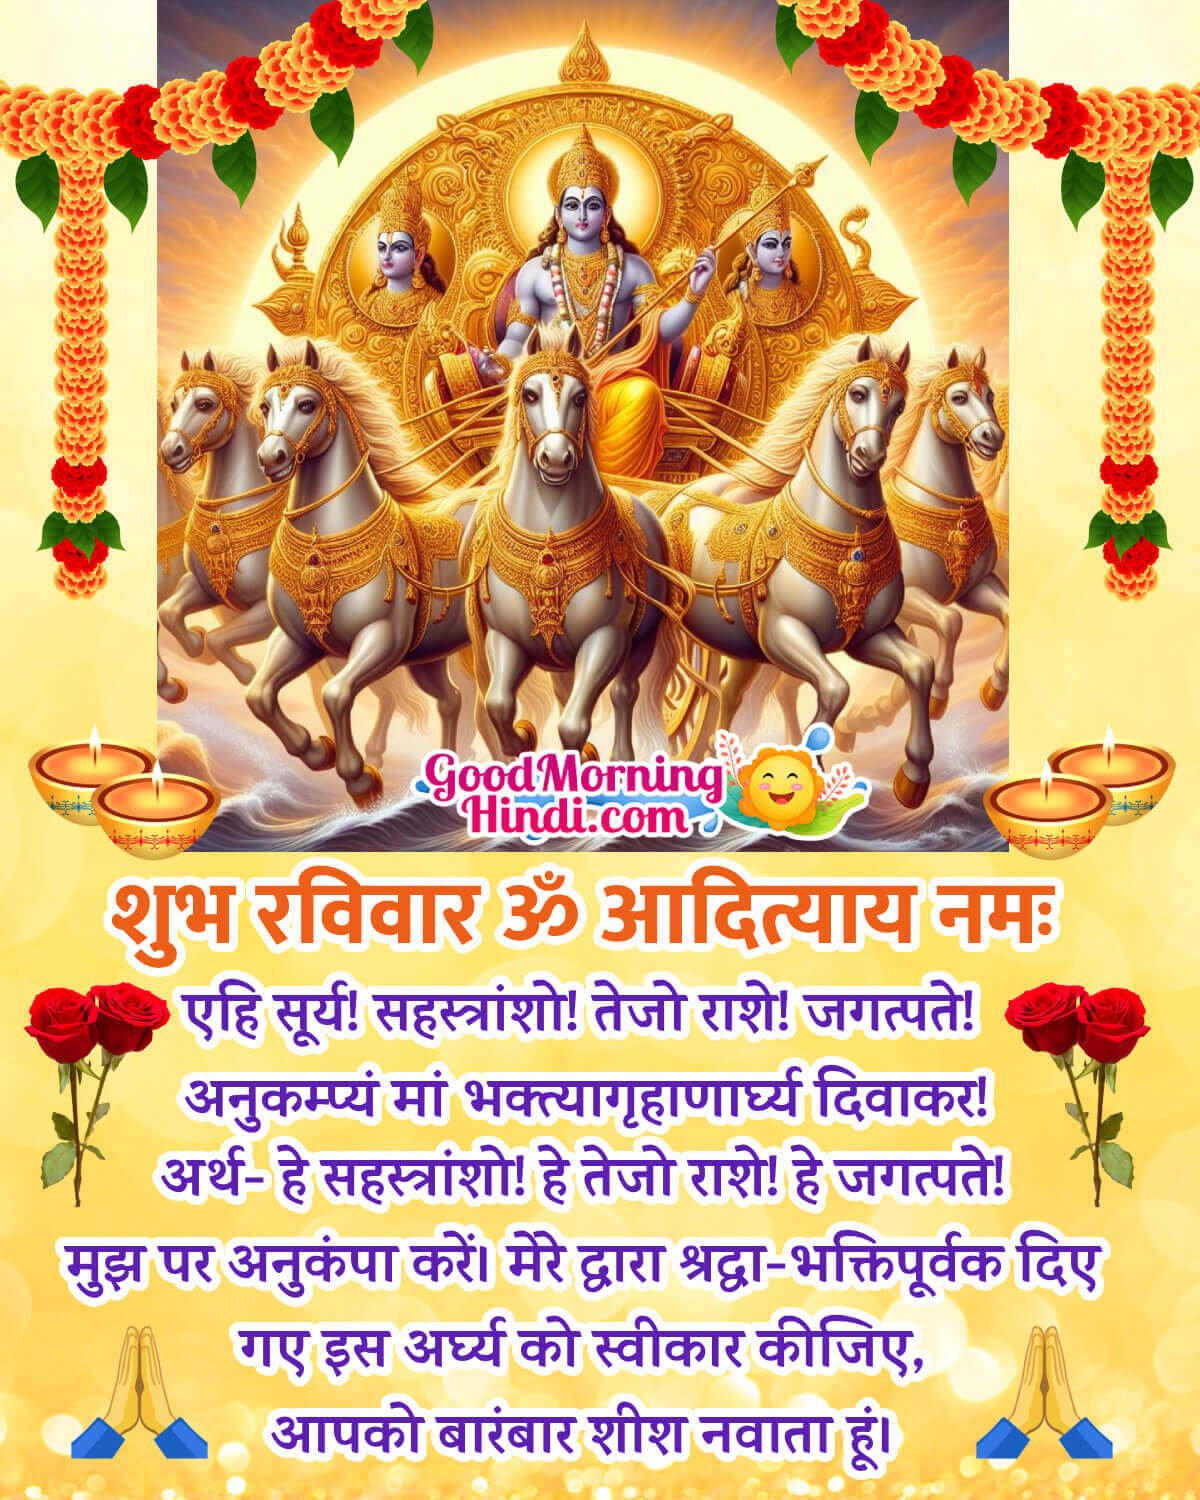 Surya Dev Sunday Greeting Image